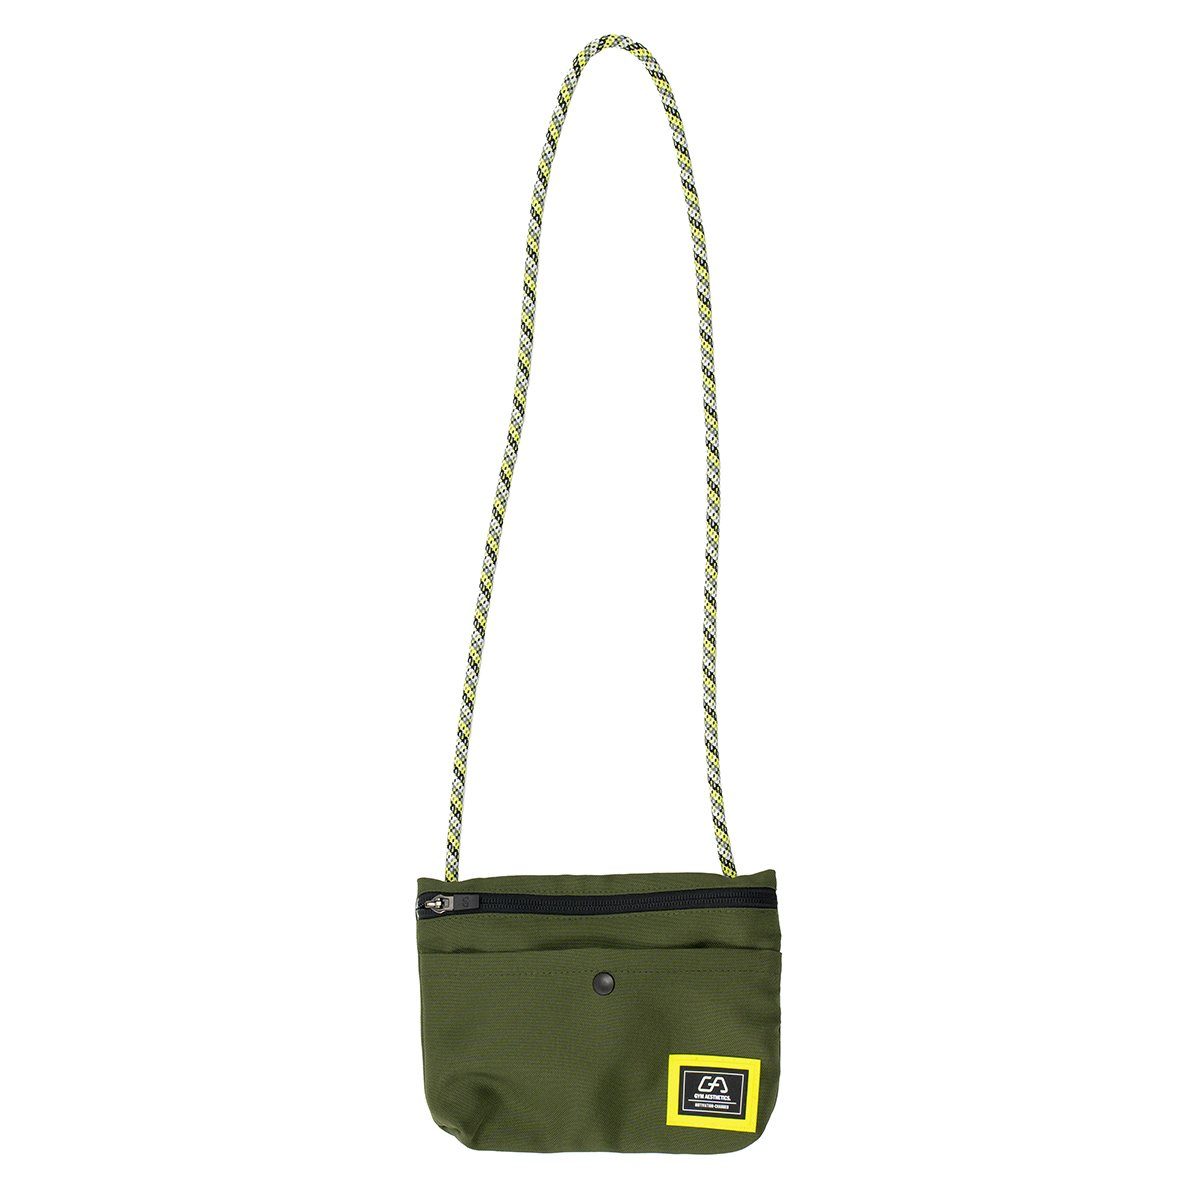 GYM AESTHETICS Umhängetasche Functional Trendy City Bag, Stylische Citytasche Olive | Umhängetaschen